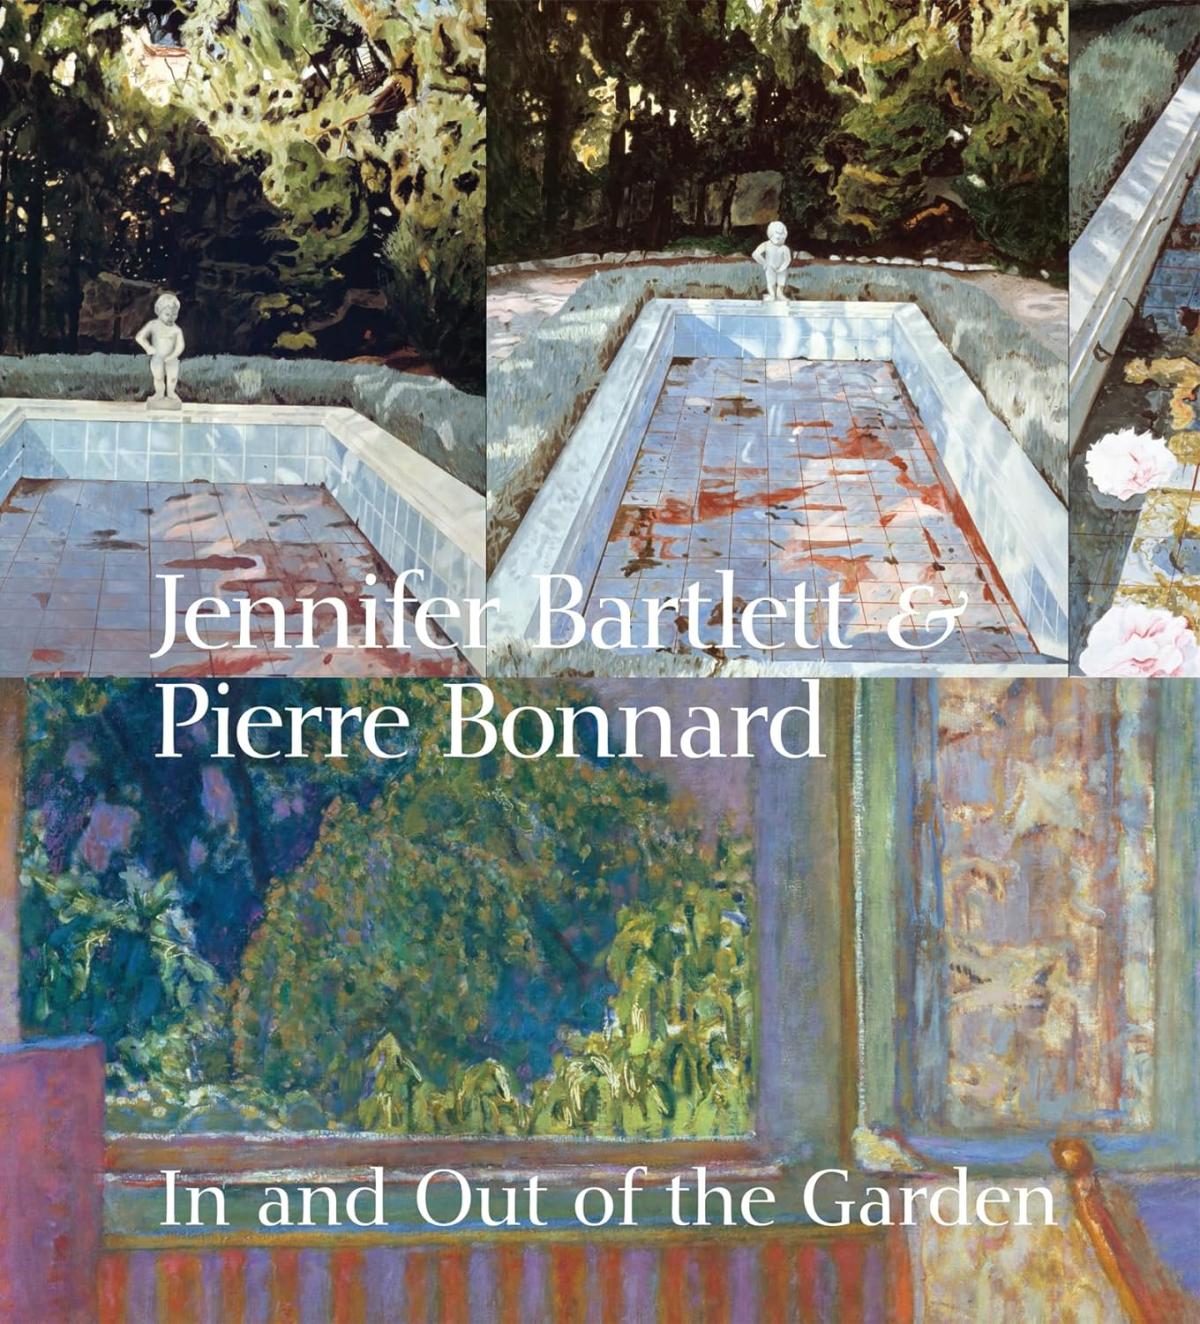 Jennifer Bartlett & Pierre Bonnard catalogue cover